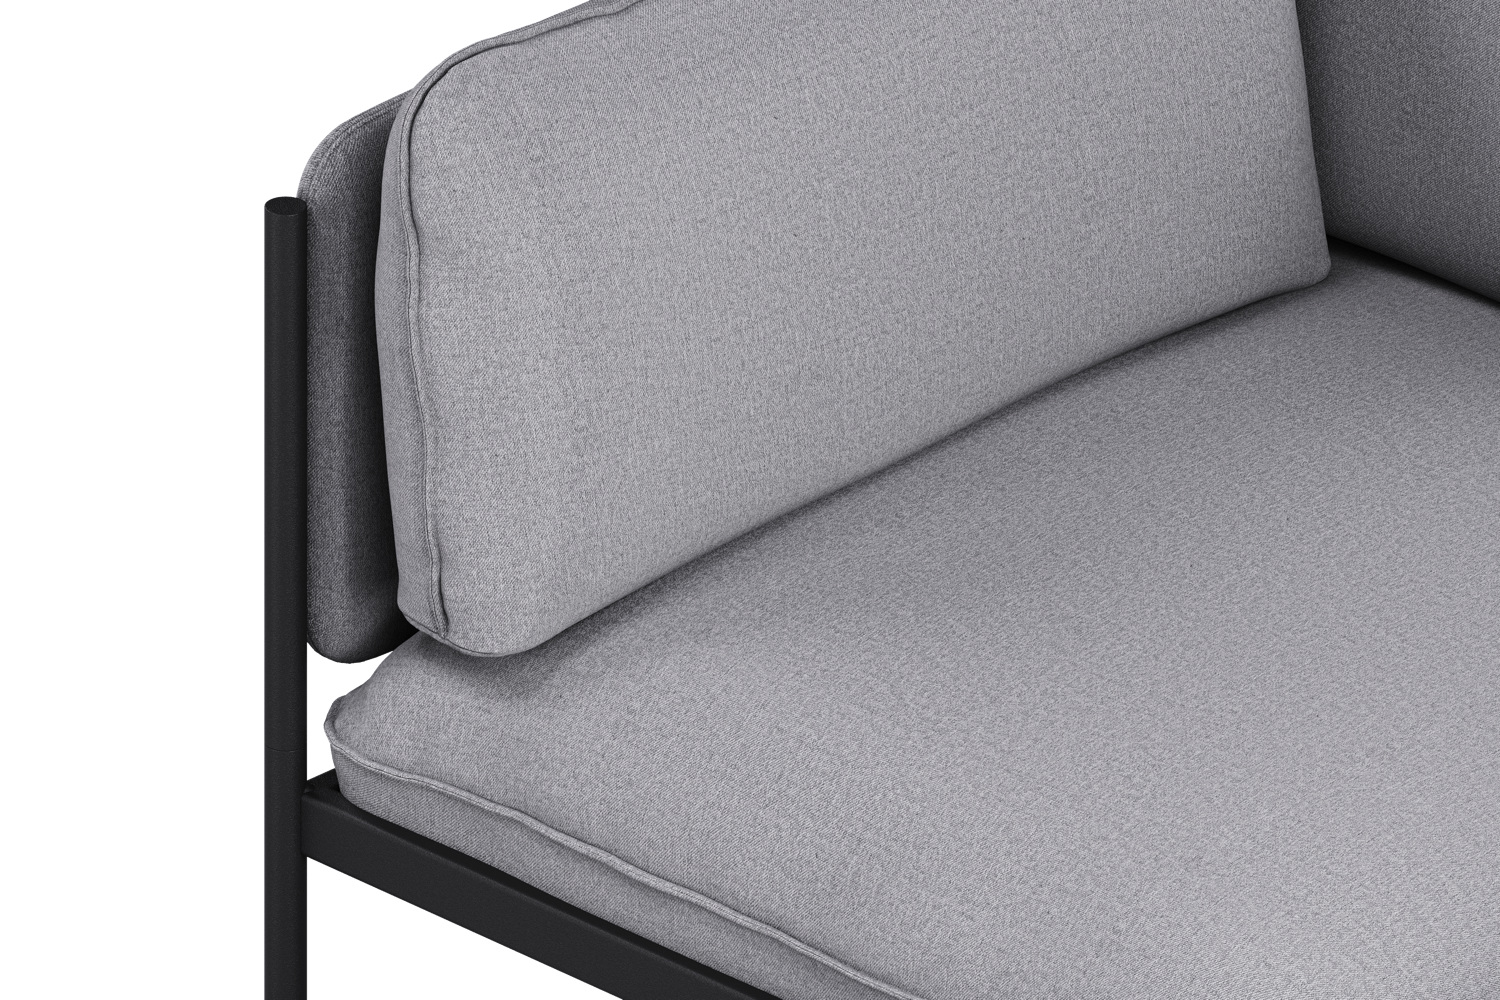 Toom Modular Sofa 4-Sitzer Konfiguration 1a in Pale Grey  präsentiert im Onlineshop von KAQTU Design AG. 4er Sofa ist von Noo.ma